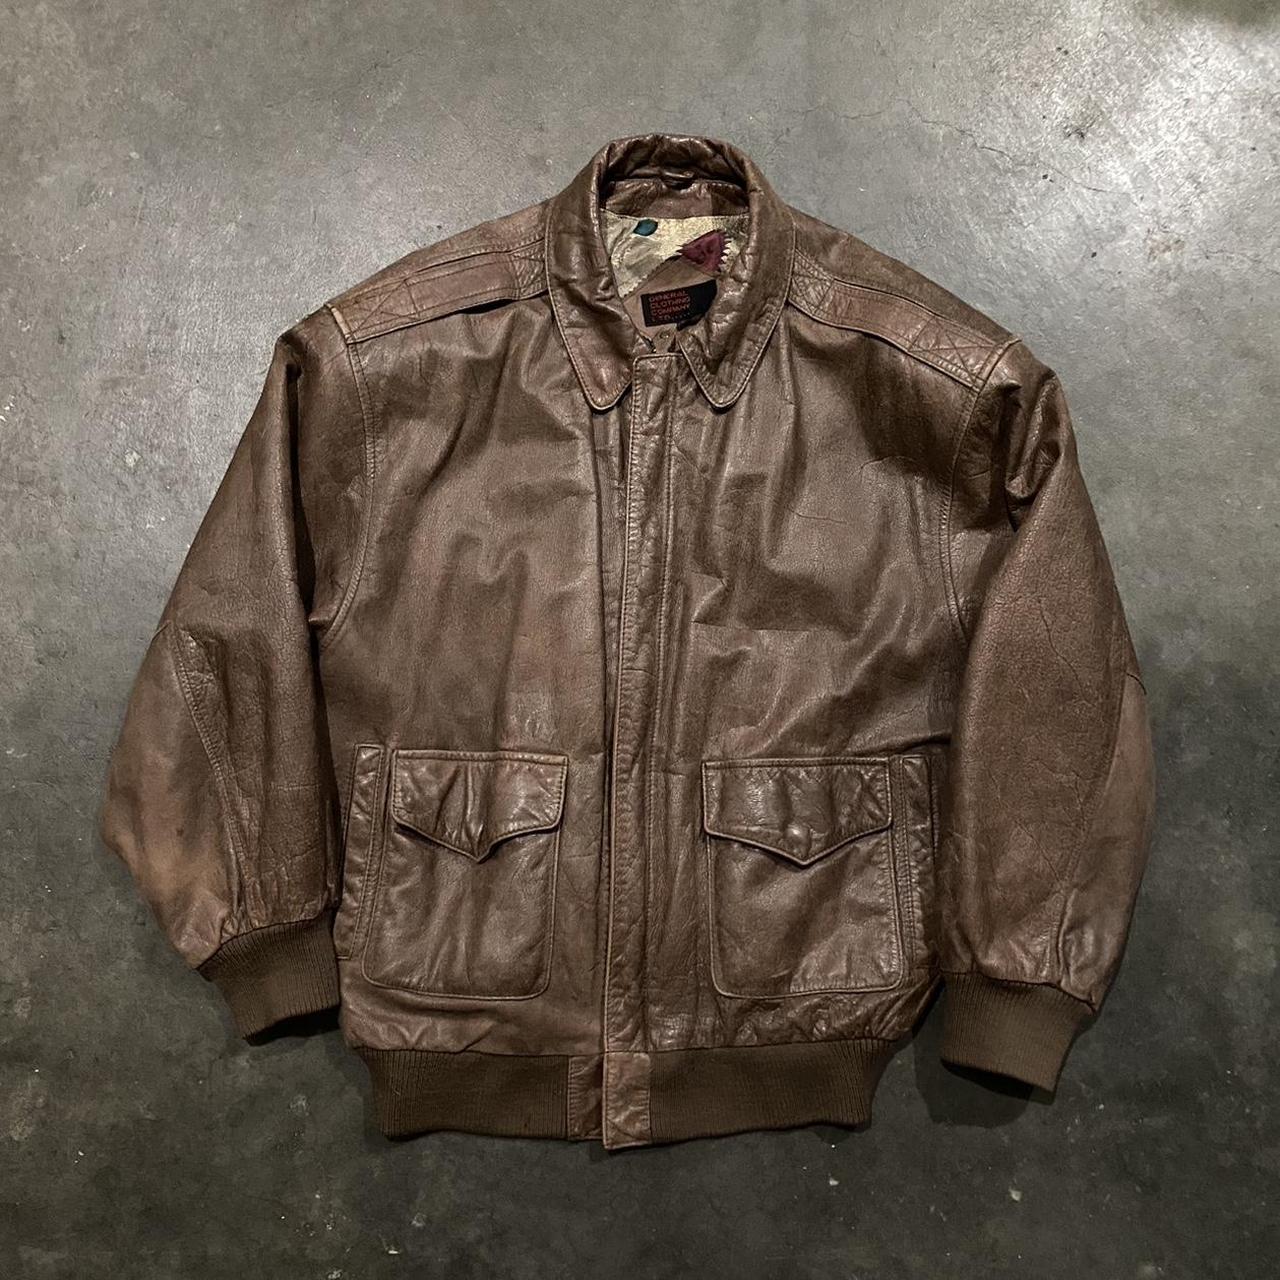 Vintage Leather Bomber Jacket Size L Great... - Depop